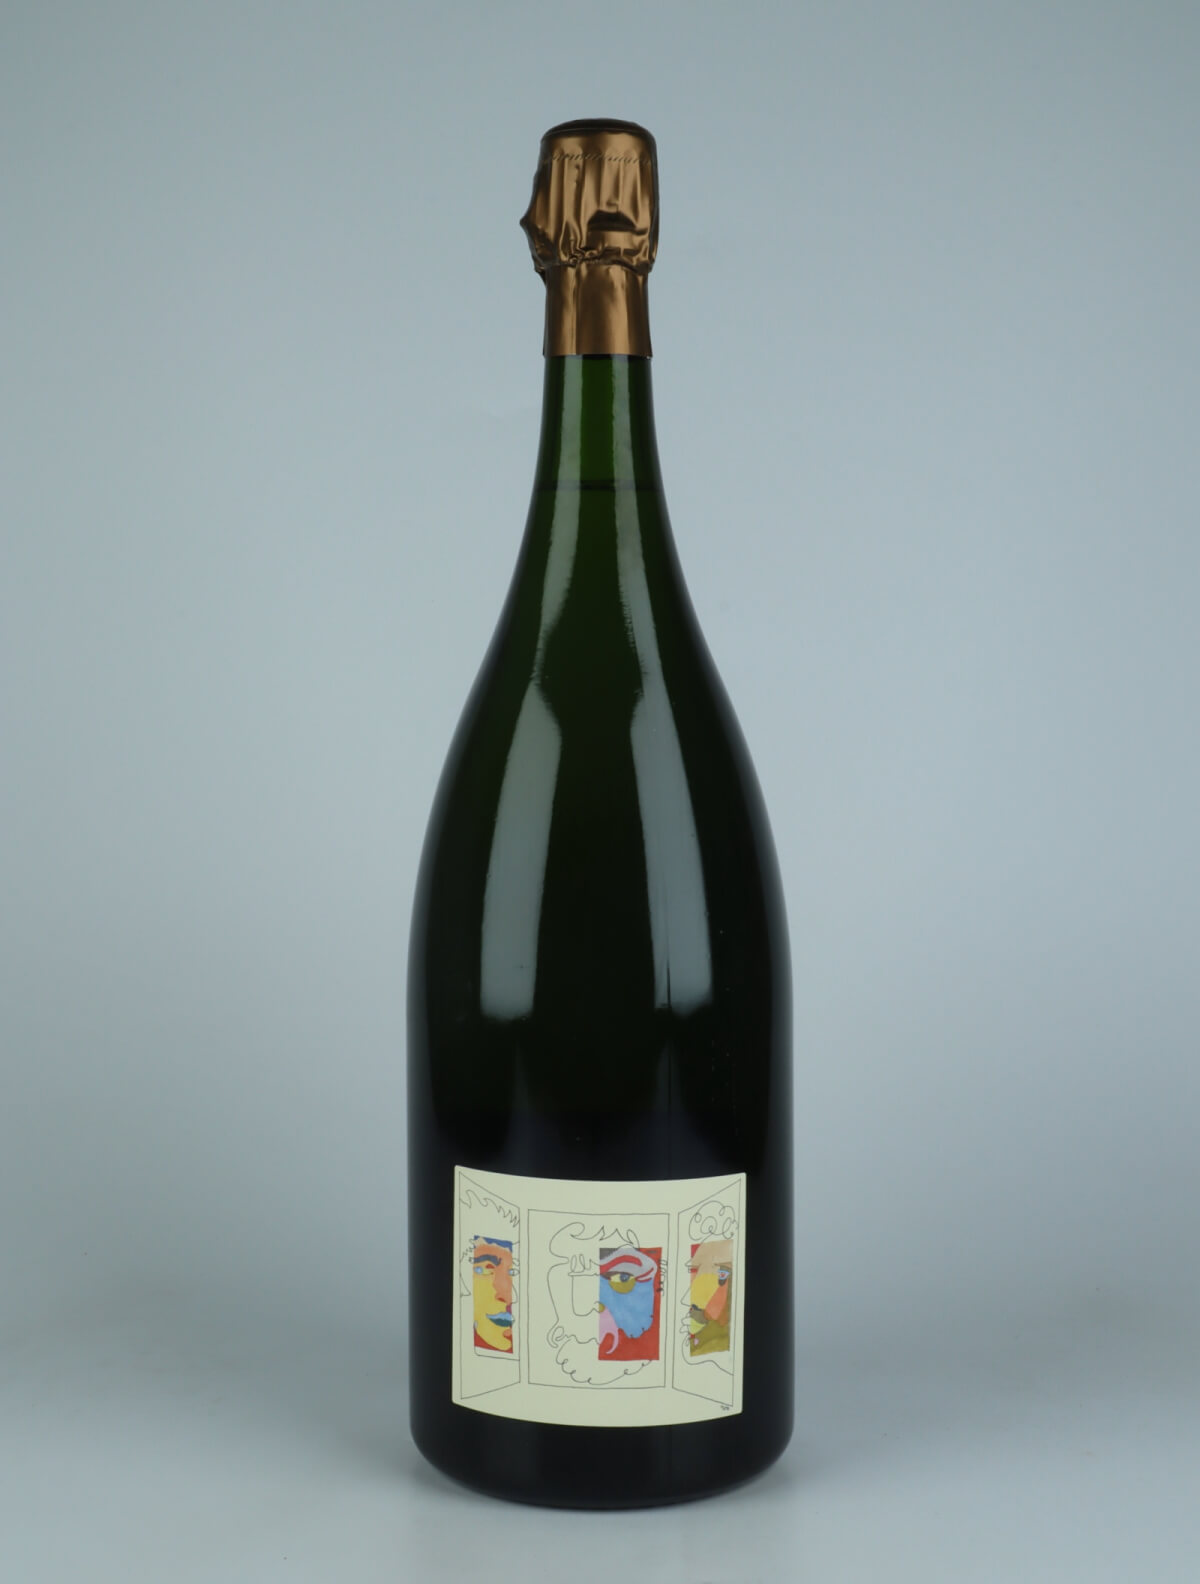 A bottle N.V. Triptyque (07/14/15) - Brut Nature - Magnum Sparkling from Stroebel, Champagne in France